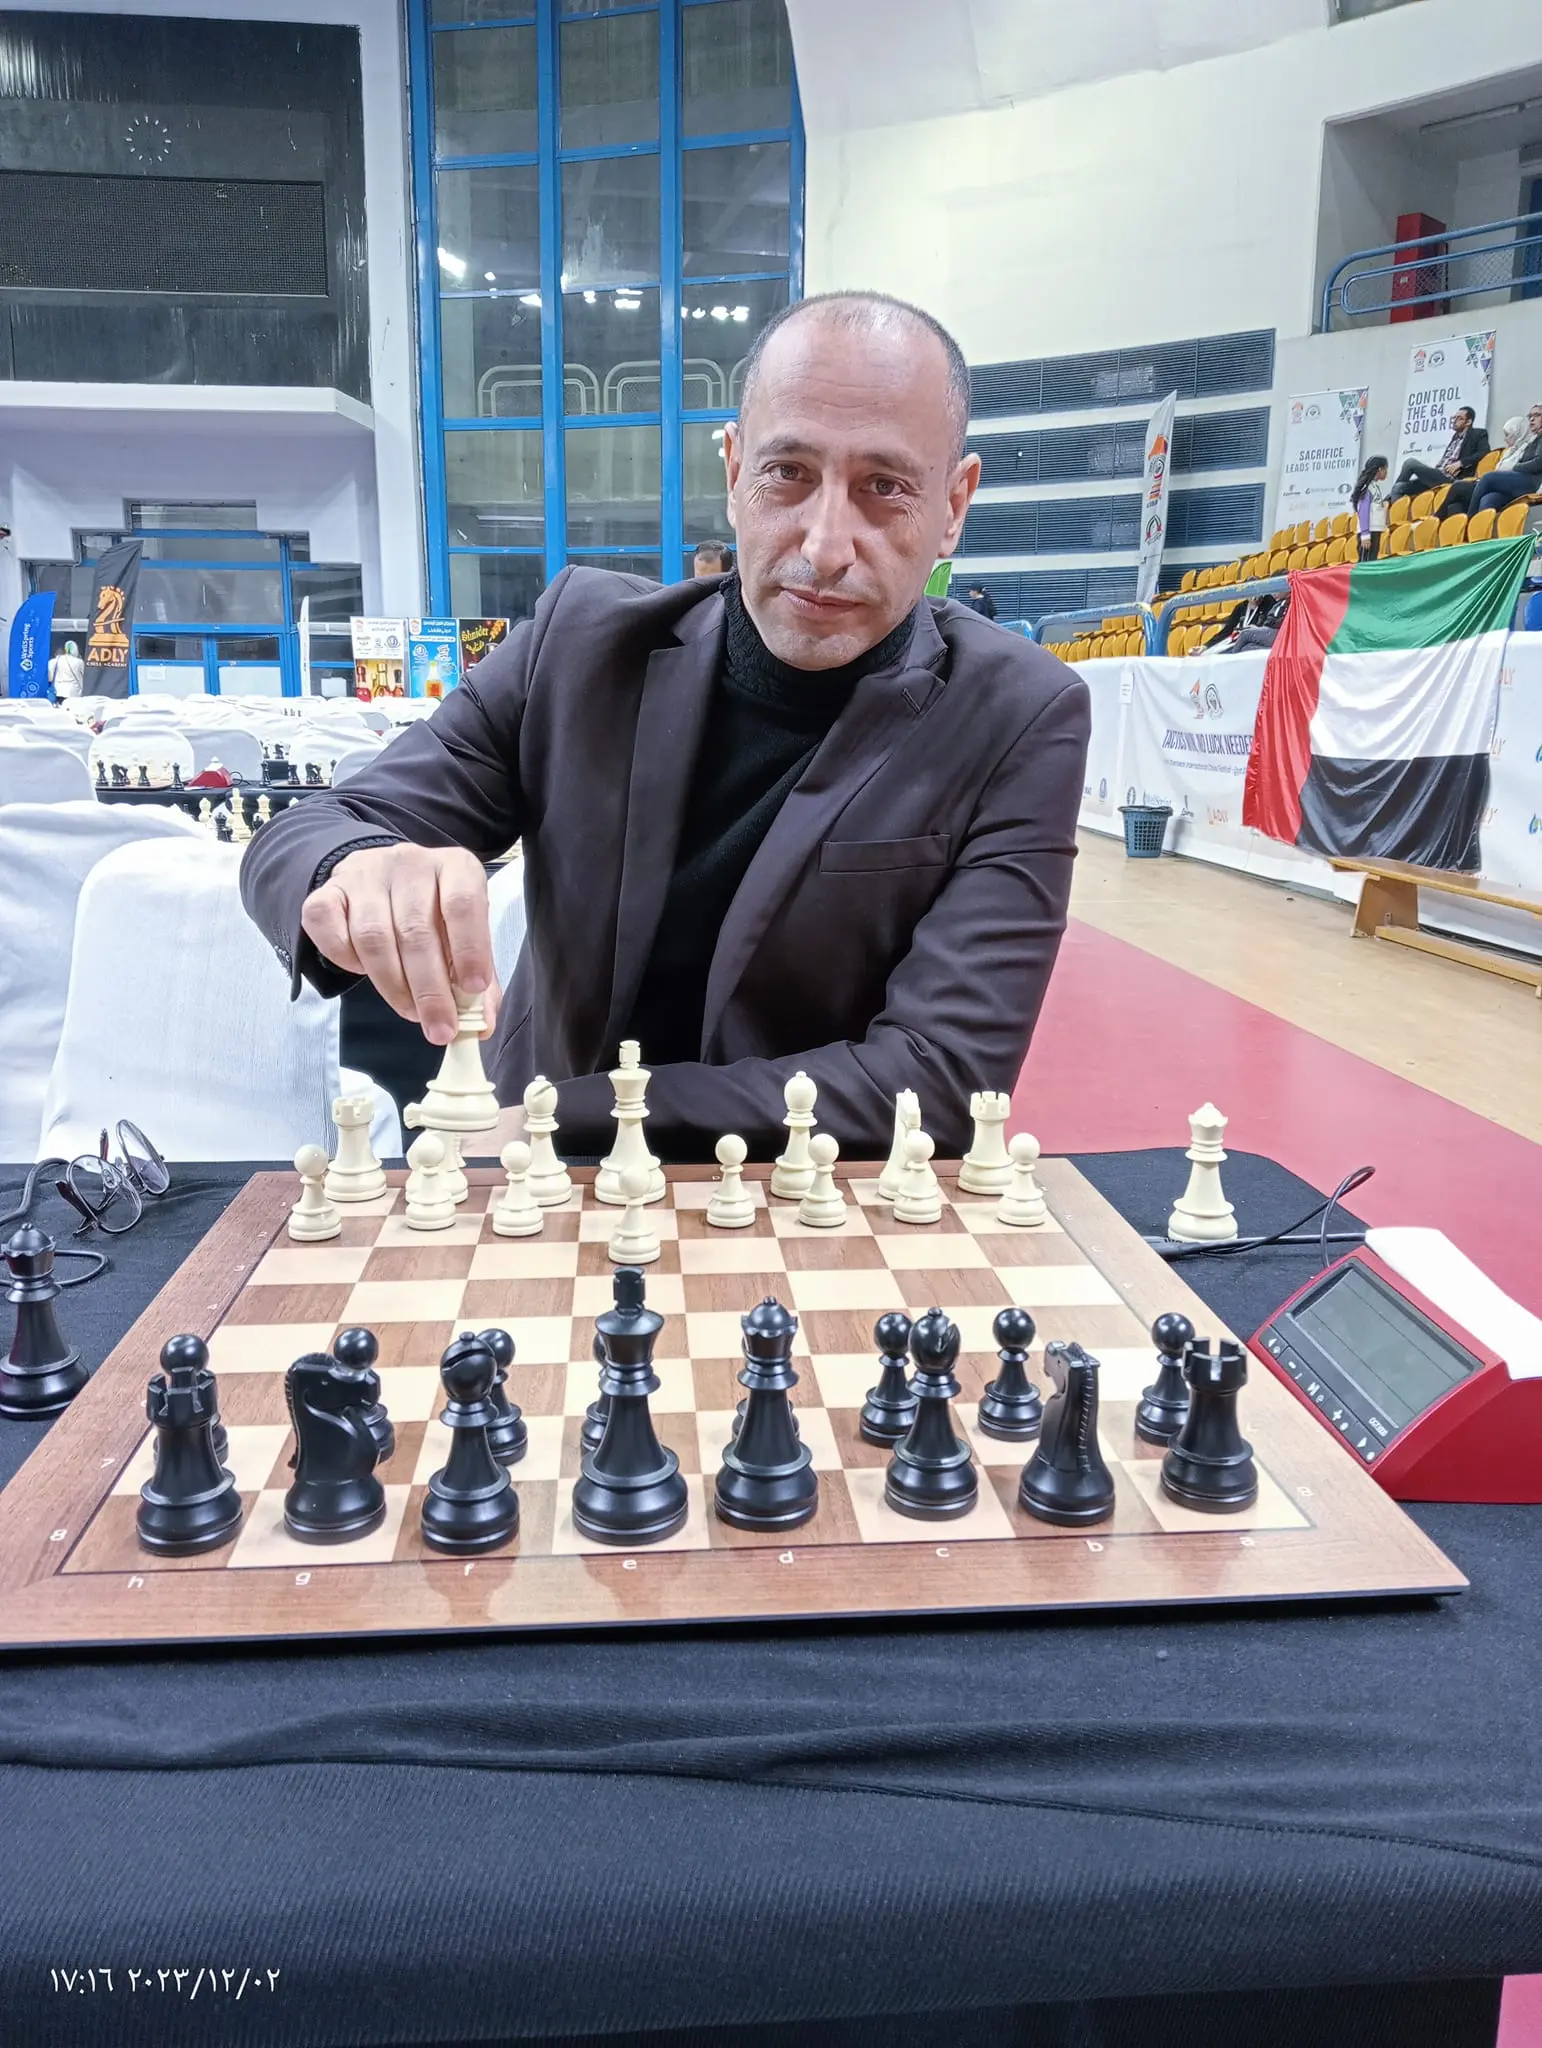 محمد الضبعان يحصد المركز الأول في بطولة الصحفيين للشطرنج بعد 7 جولات في منافسة شرسة